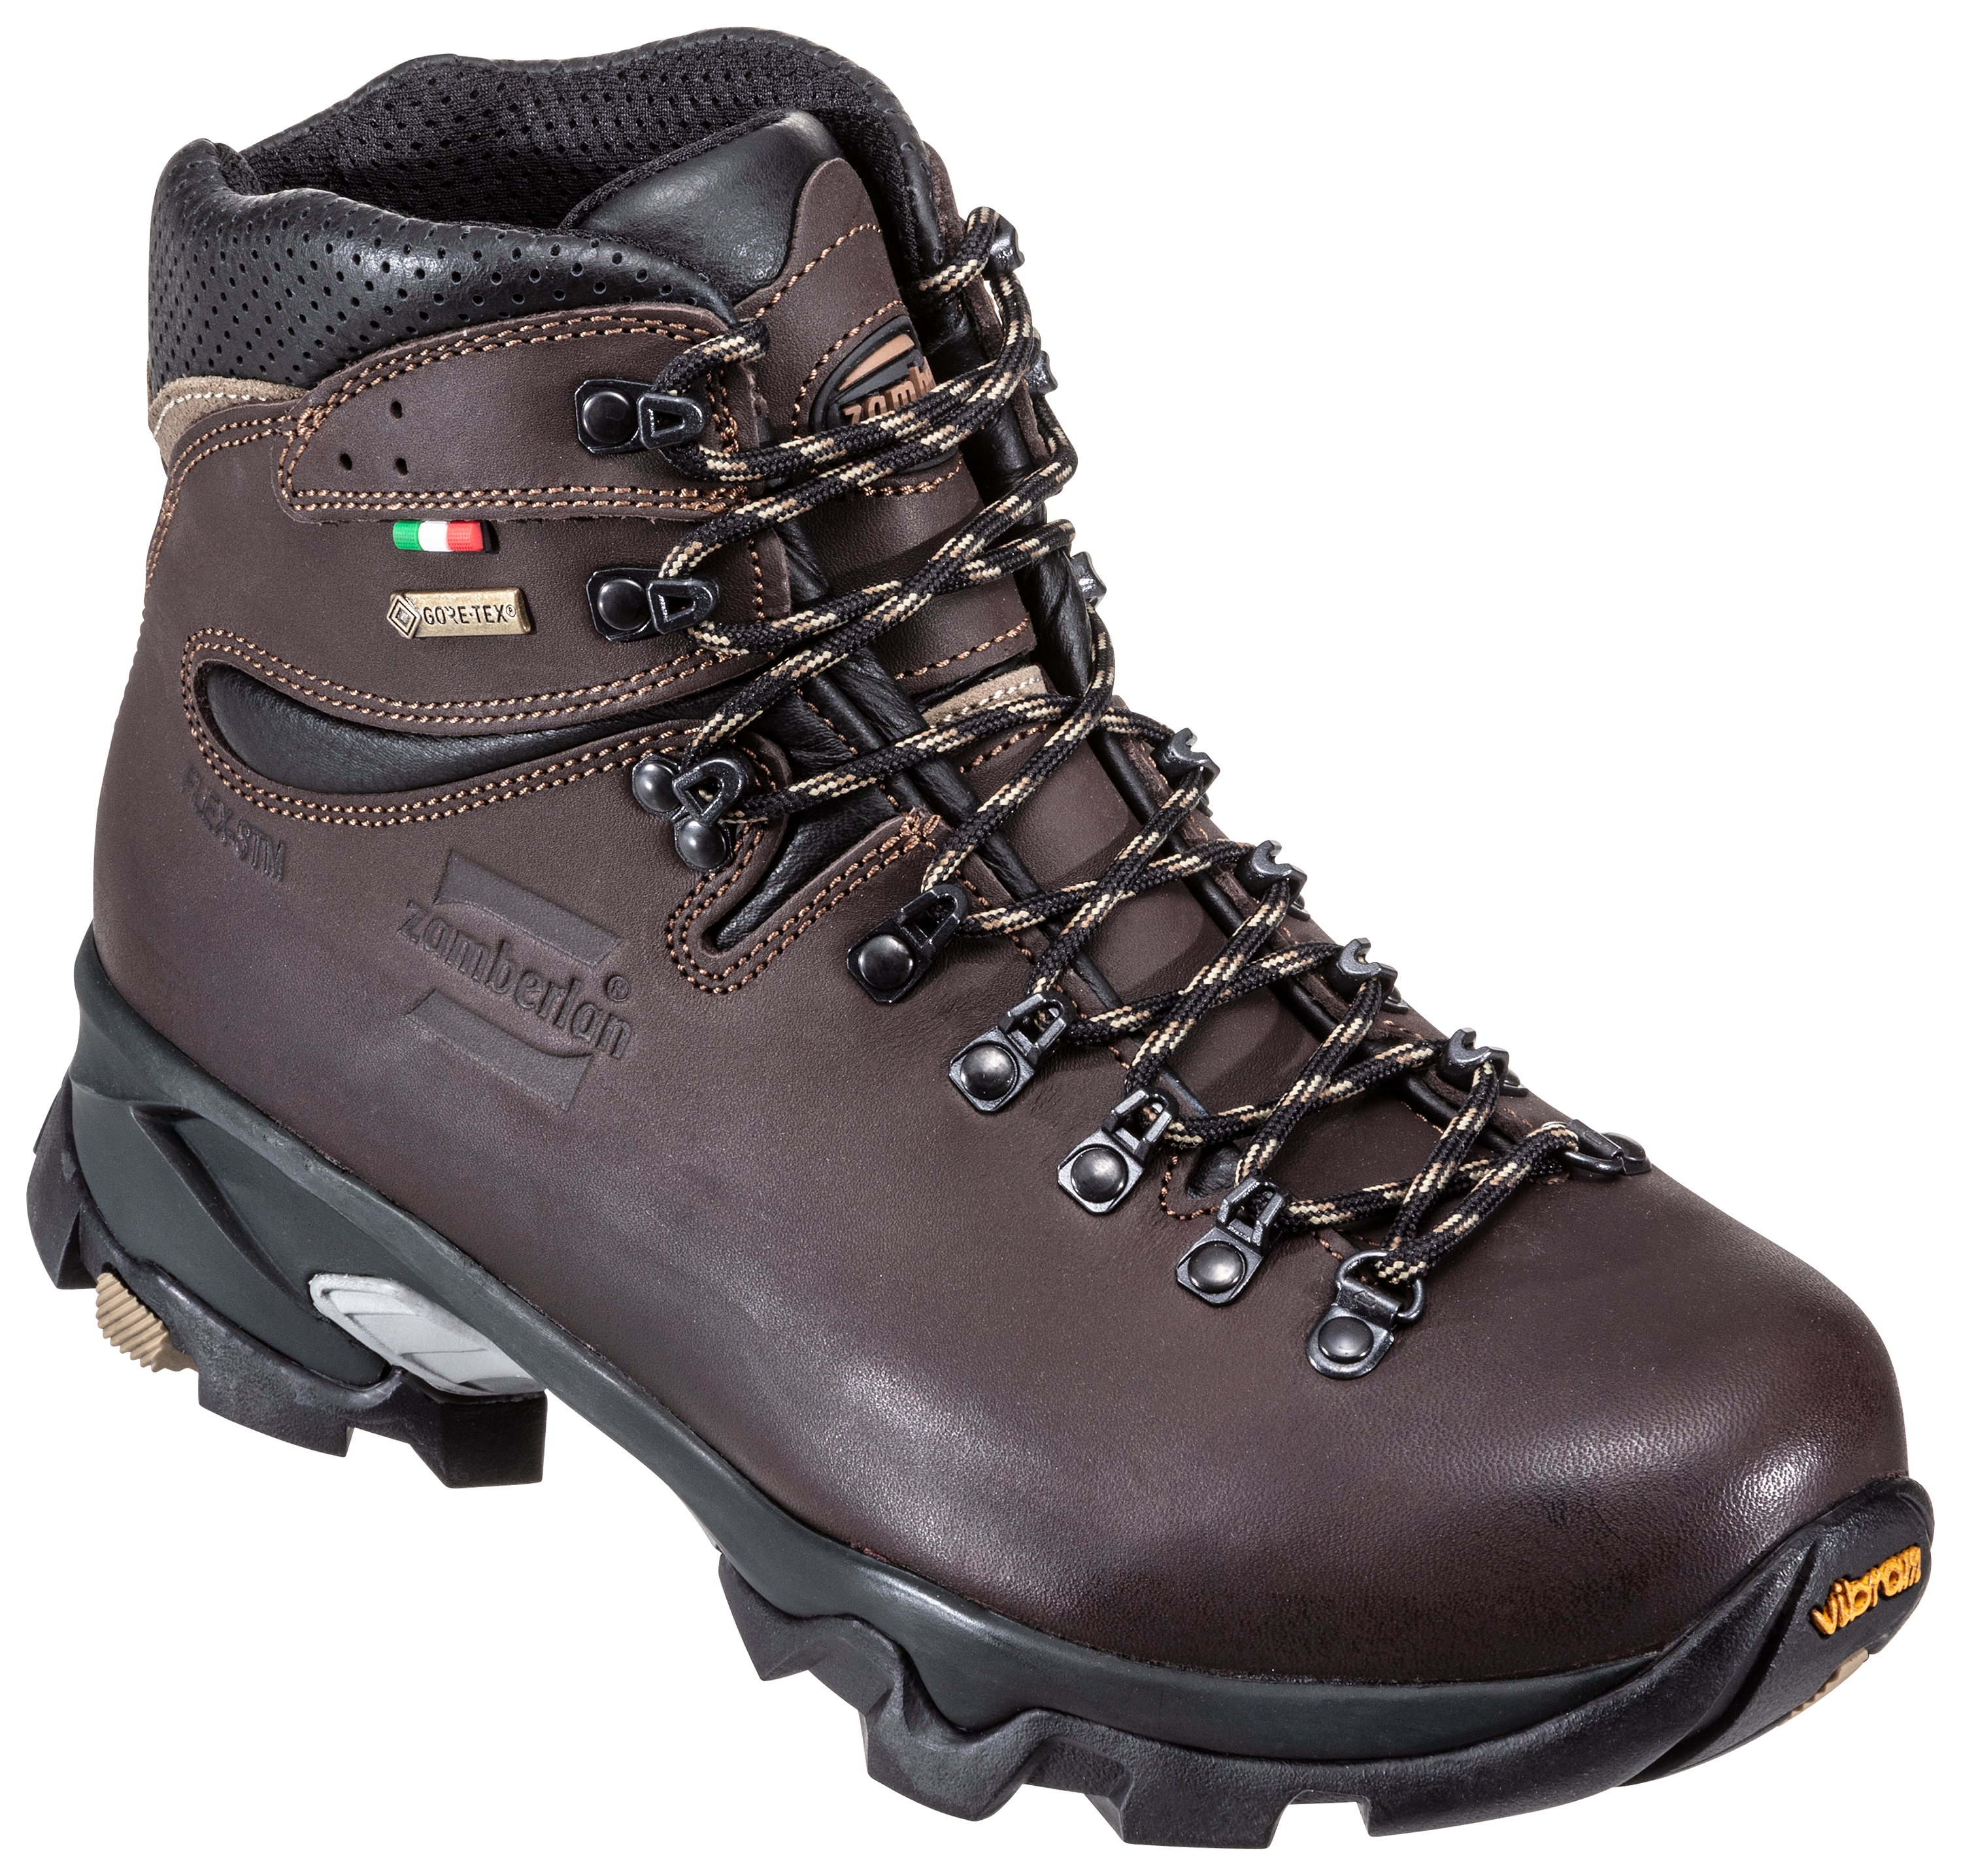 Zamberlan 996 Vioz GTX Waterproof Hiking Boots for Men | Bass Pro Shops